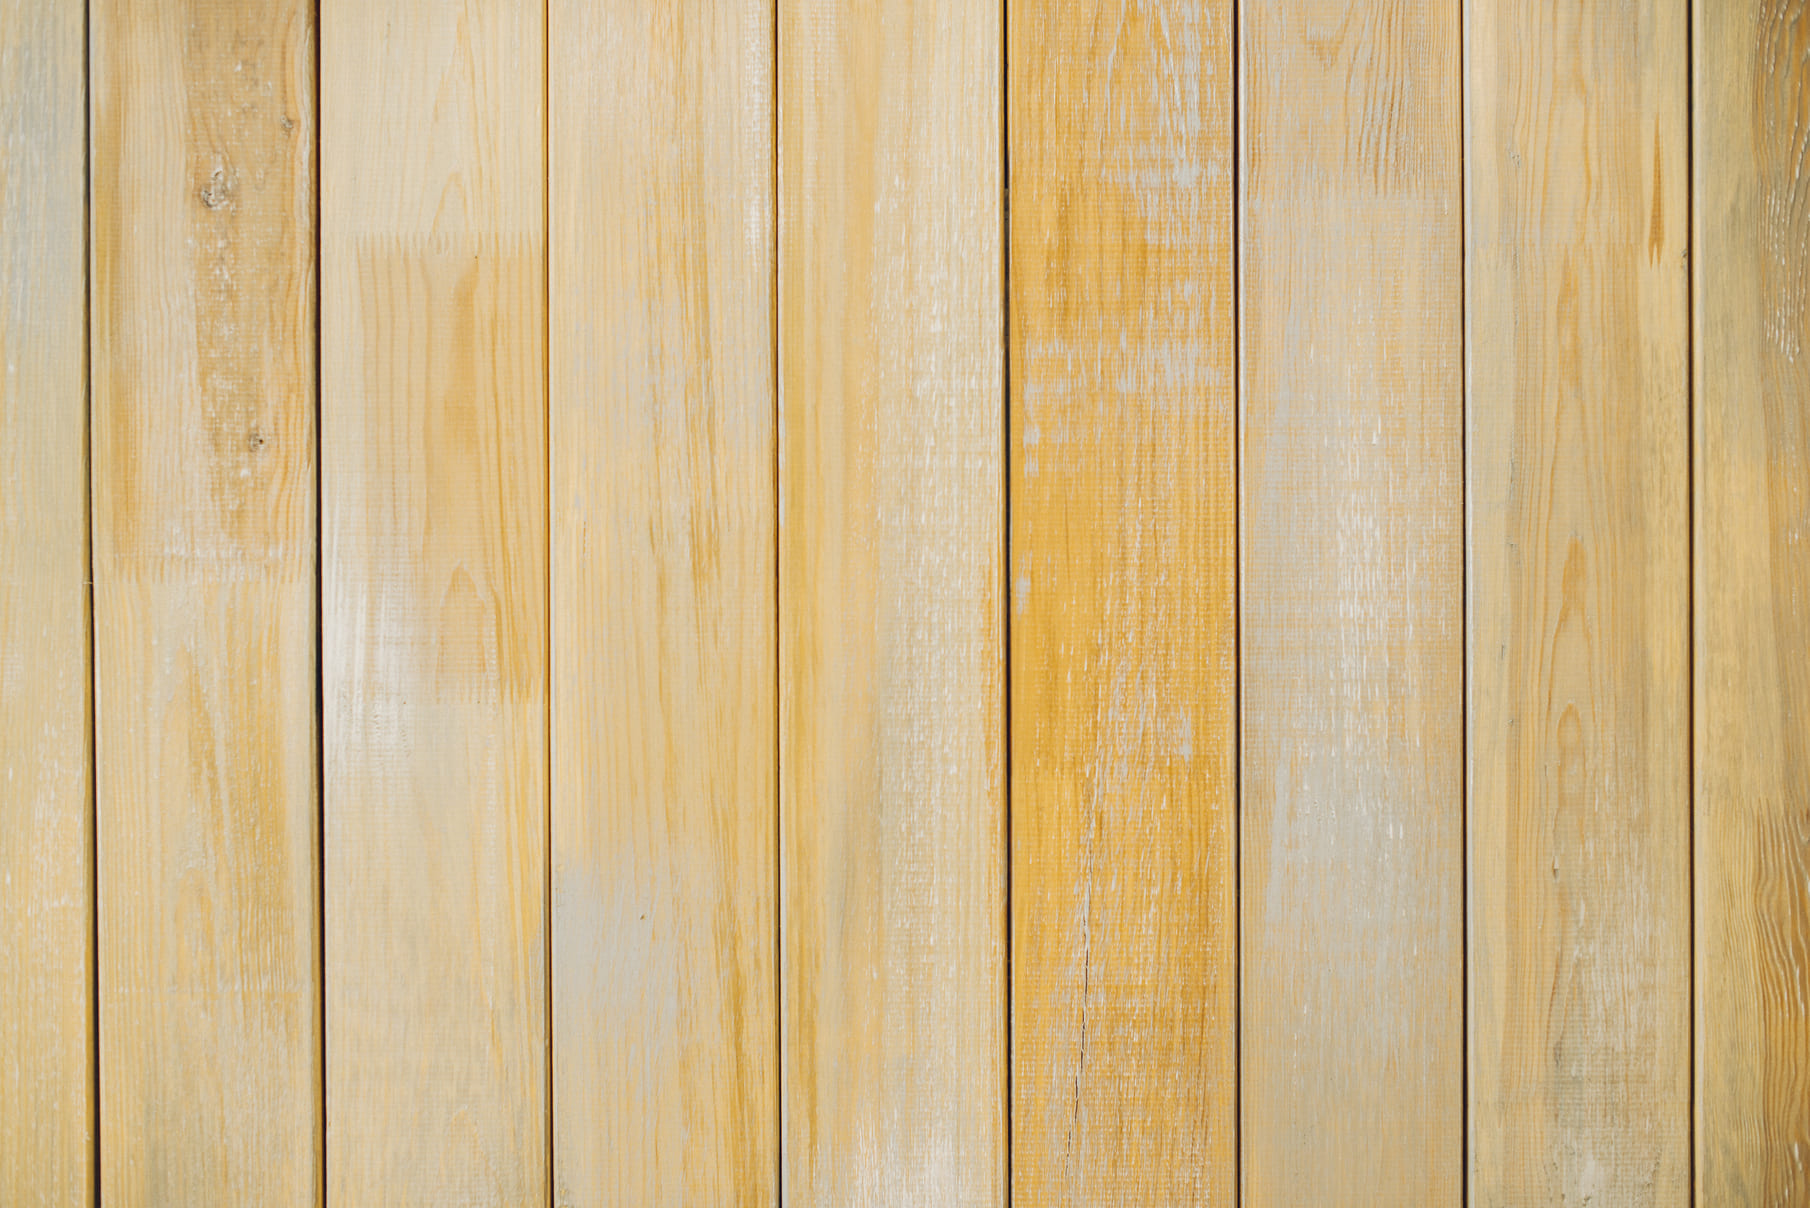 Friso de madera: cómo hacer uno paso a paso - Modrego Blog